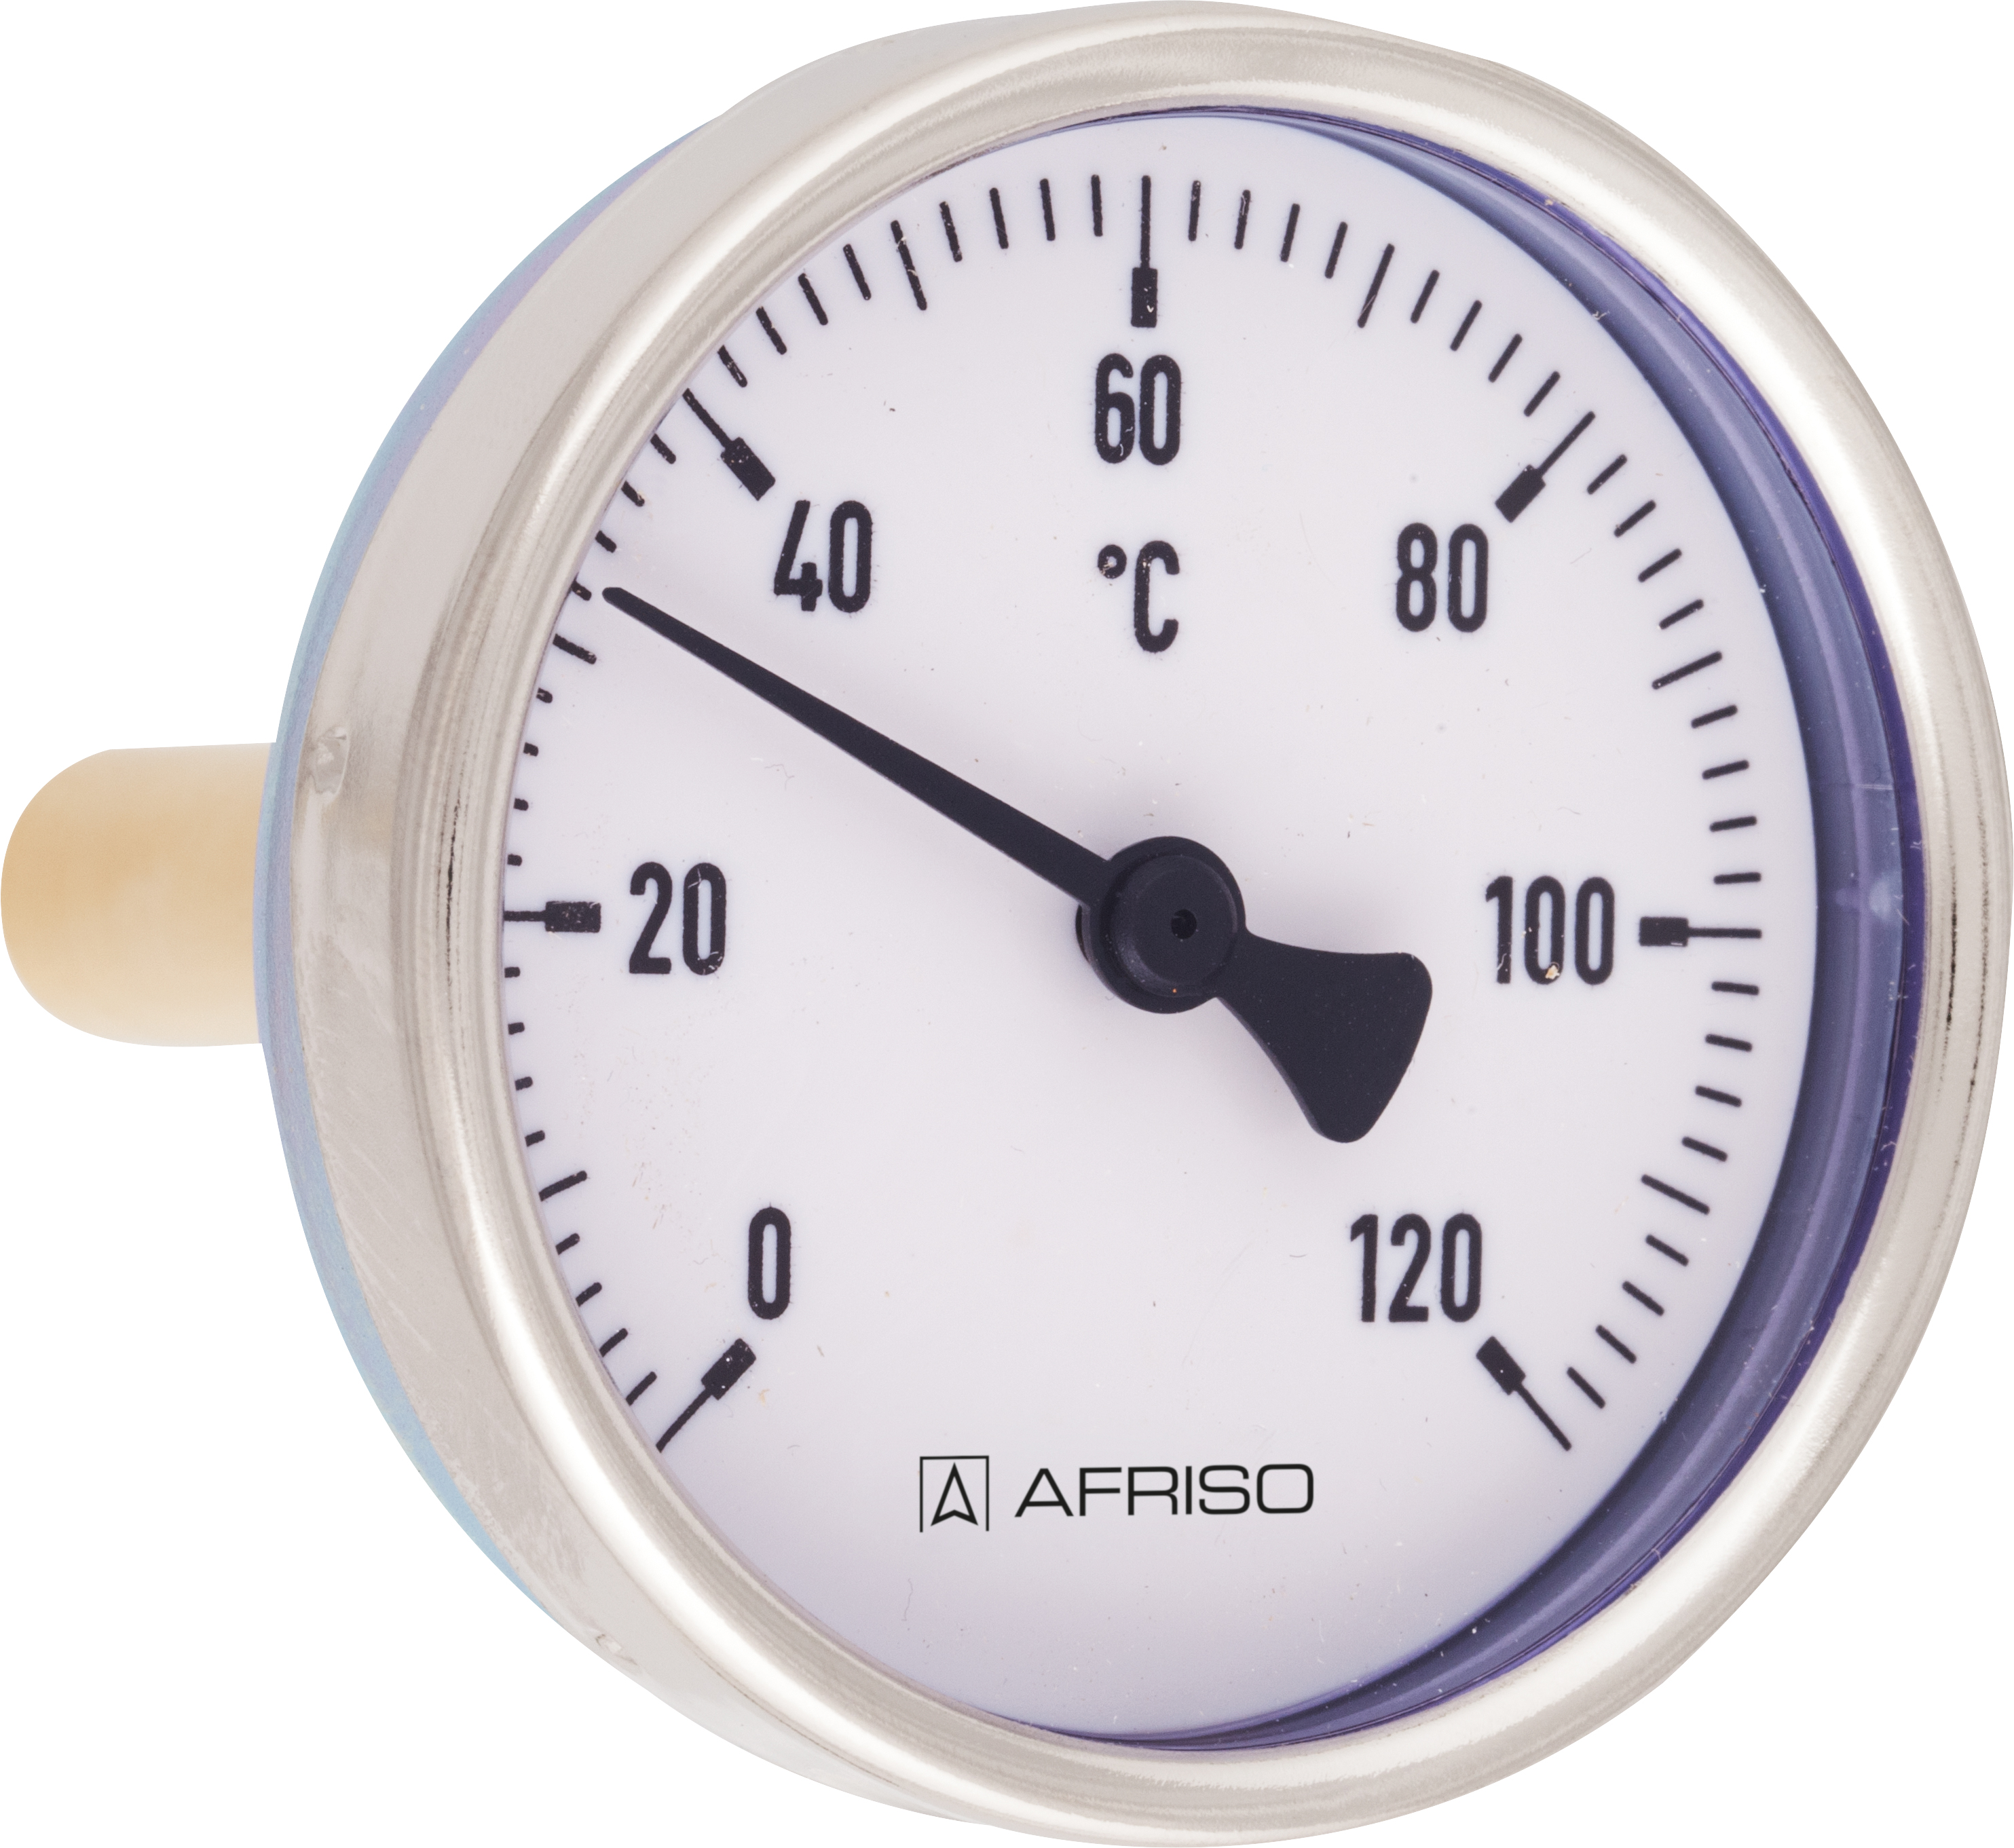 Termometr bimetaliczny BiTh 100 E, D312, fi100 mm, 0÷60°C, L 63 mm, ax, kl. 1